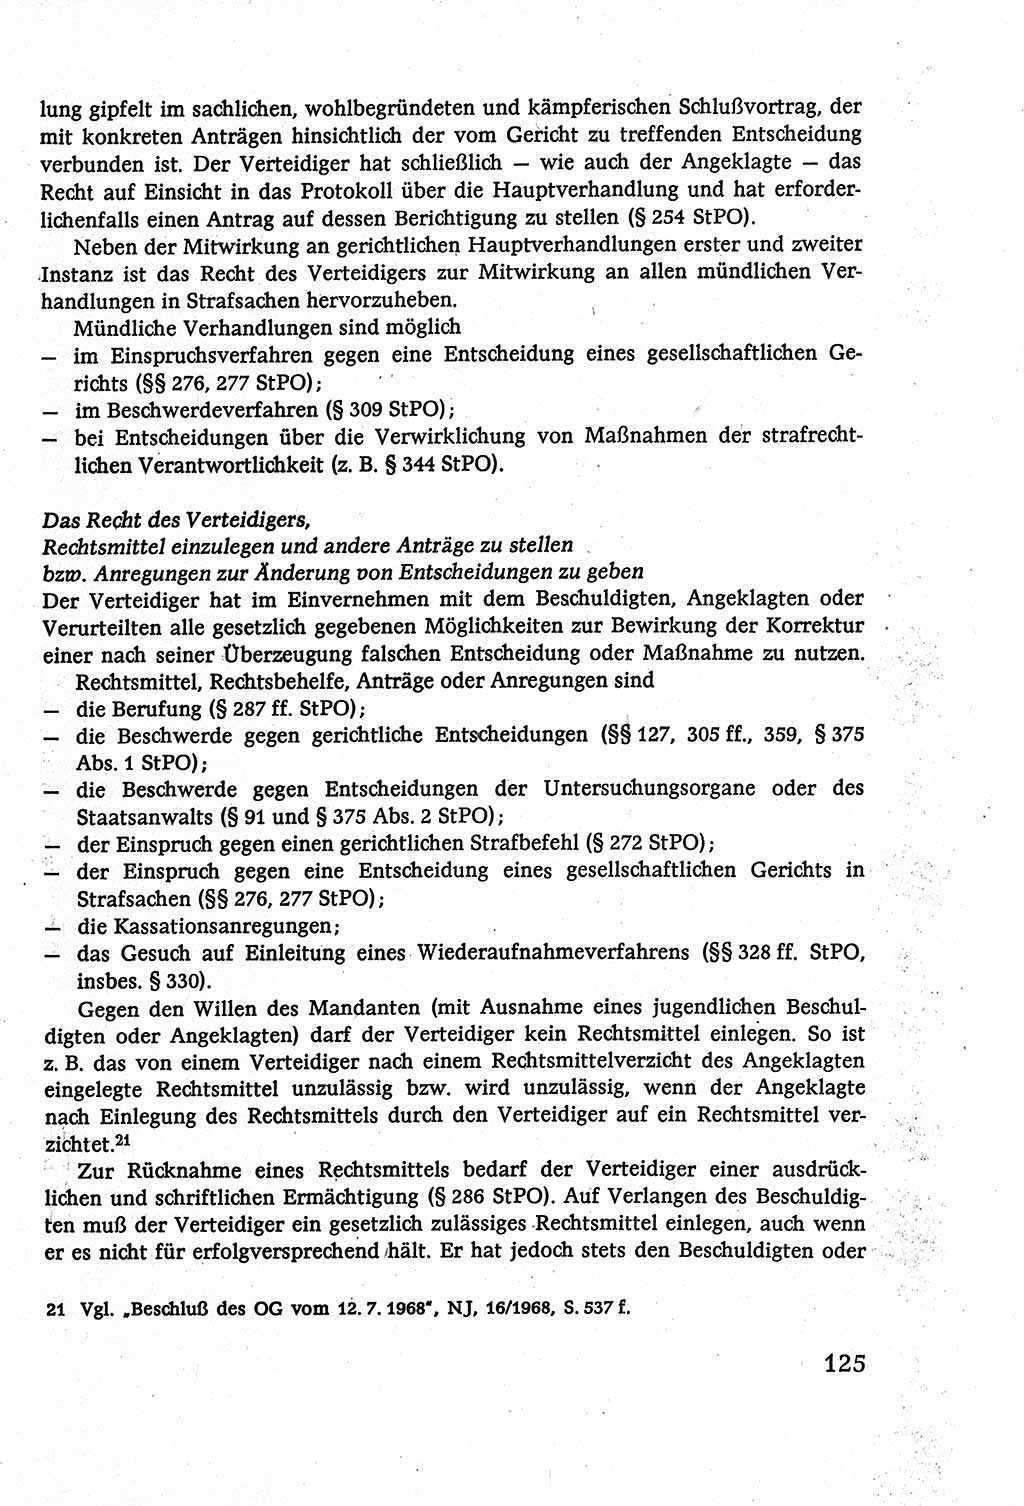 Strafverfahrensrecht [Deutsche Demokratische Republik (DDR)], Lehrbuch 1977, Seite 125 (Strafverf.-R. DDR Lb. 1977, S. 125)